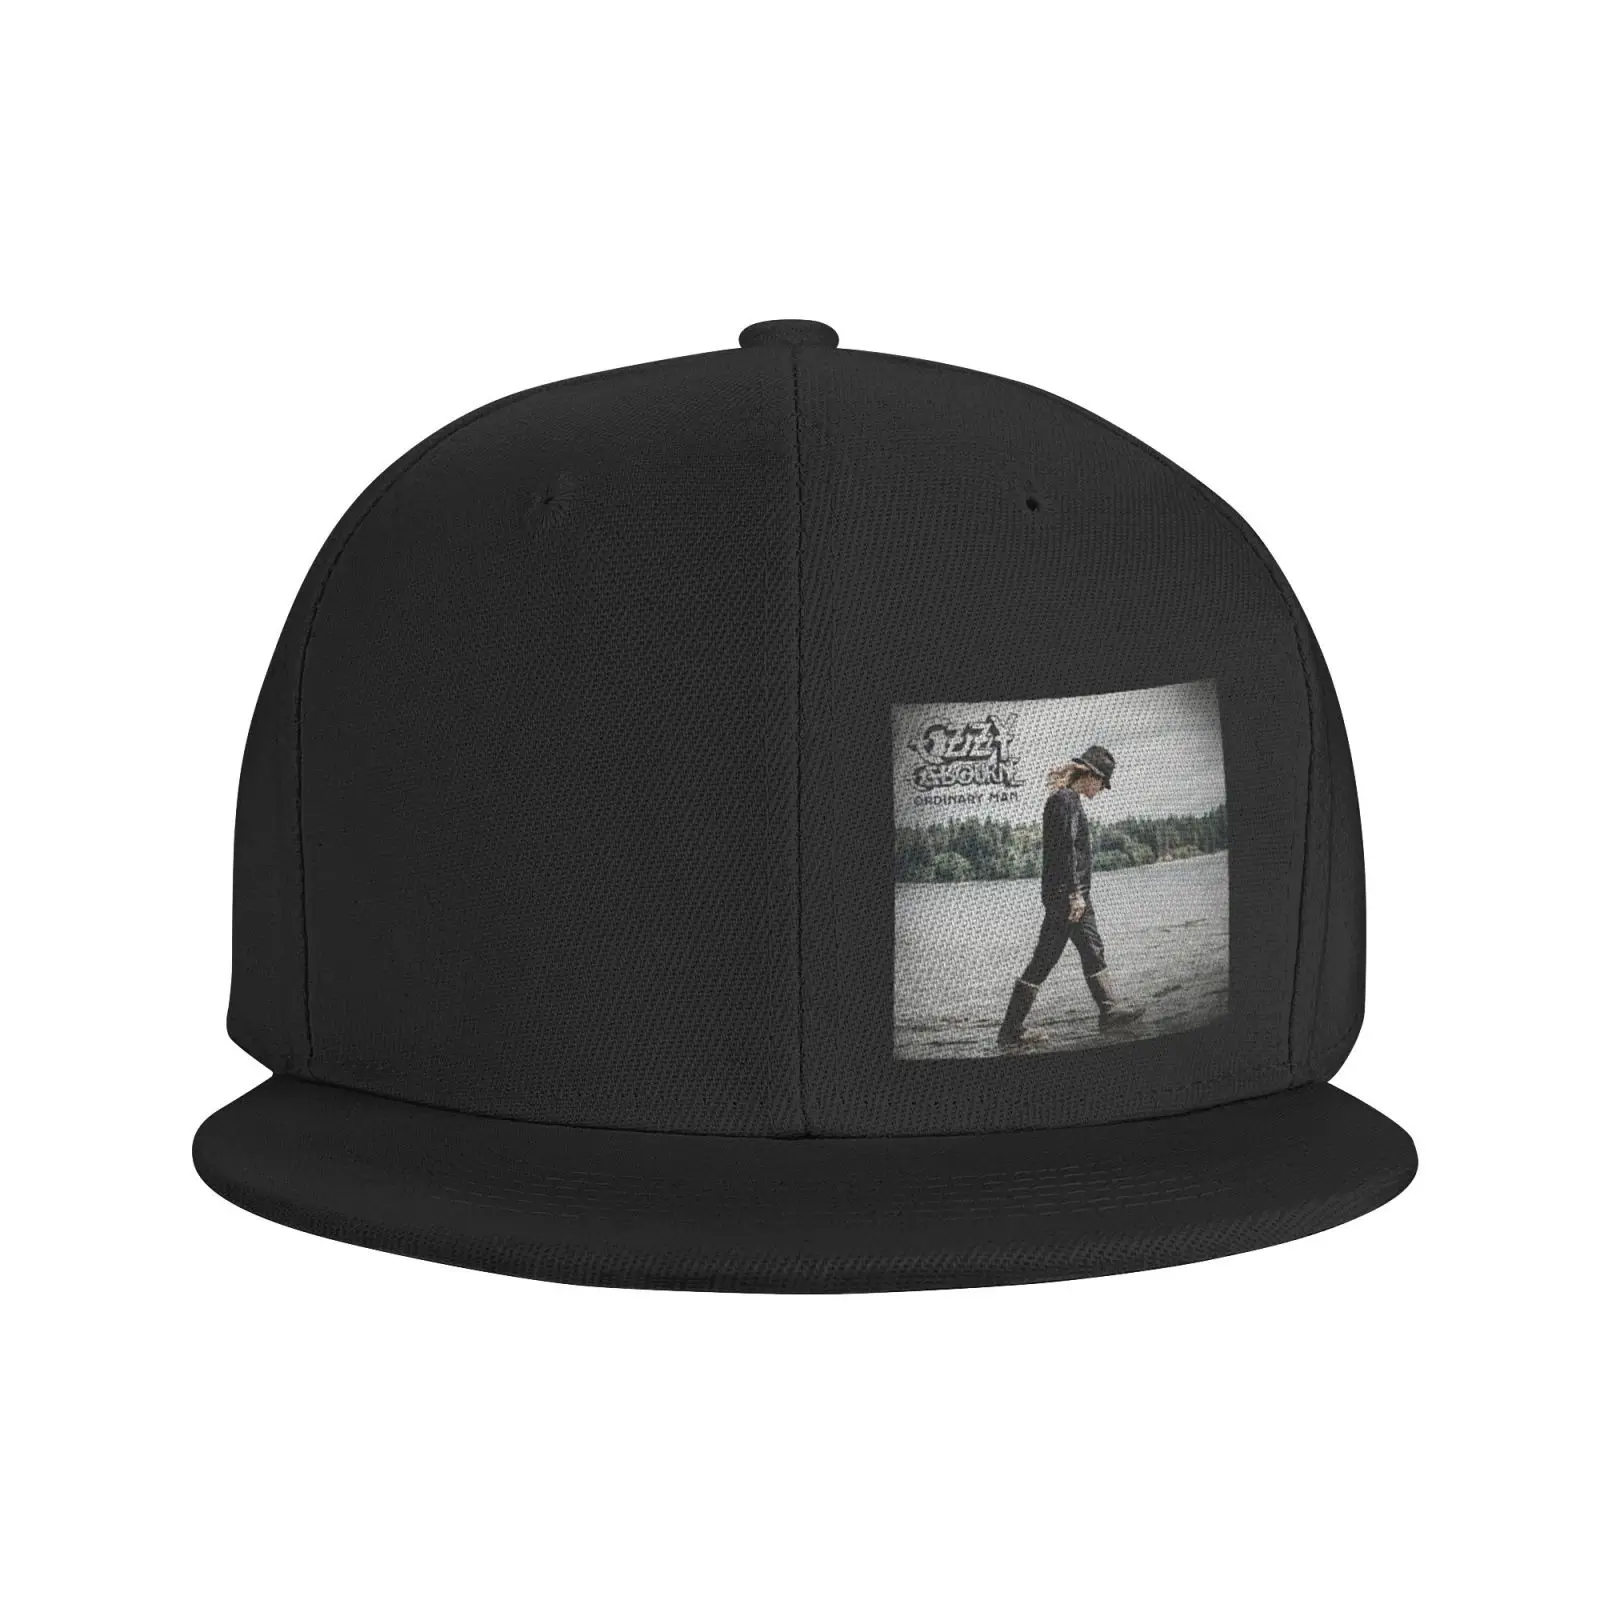 

Кепка Ozzy osосвен в обычном альбоме 2020 3470 Мужская кепка атласная Кепка берет Кепка для девочек Женская летняя кепка мужские кепки Кепка